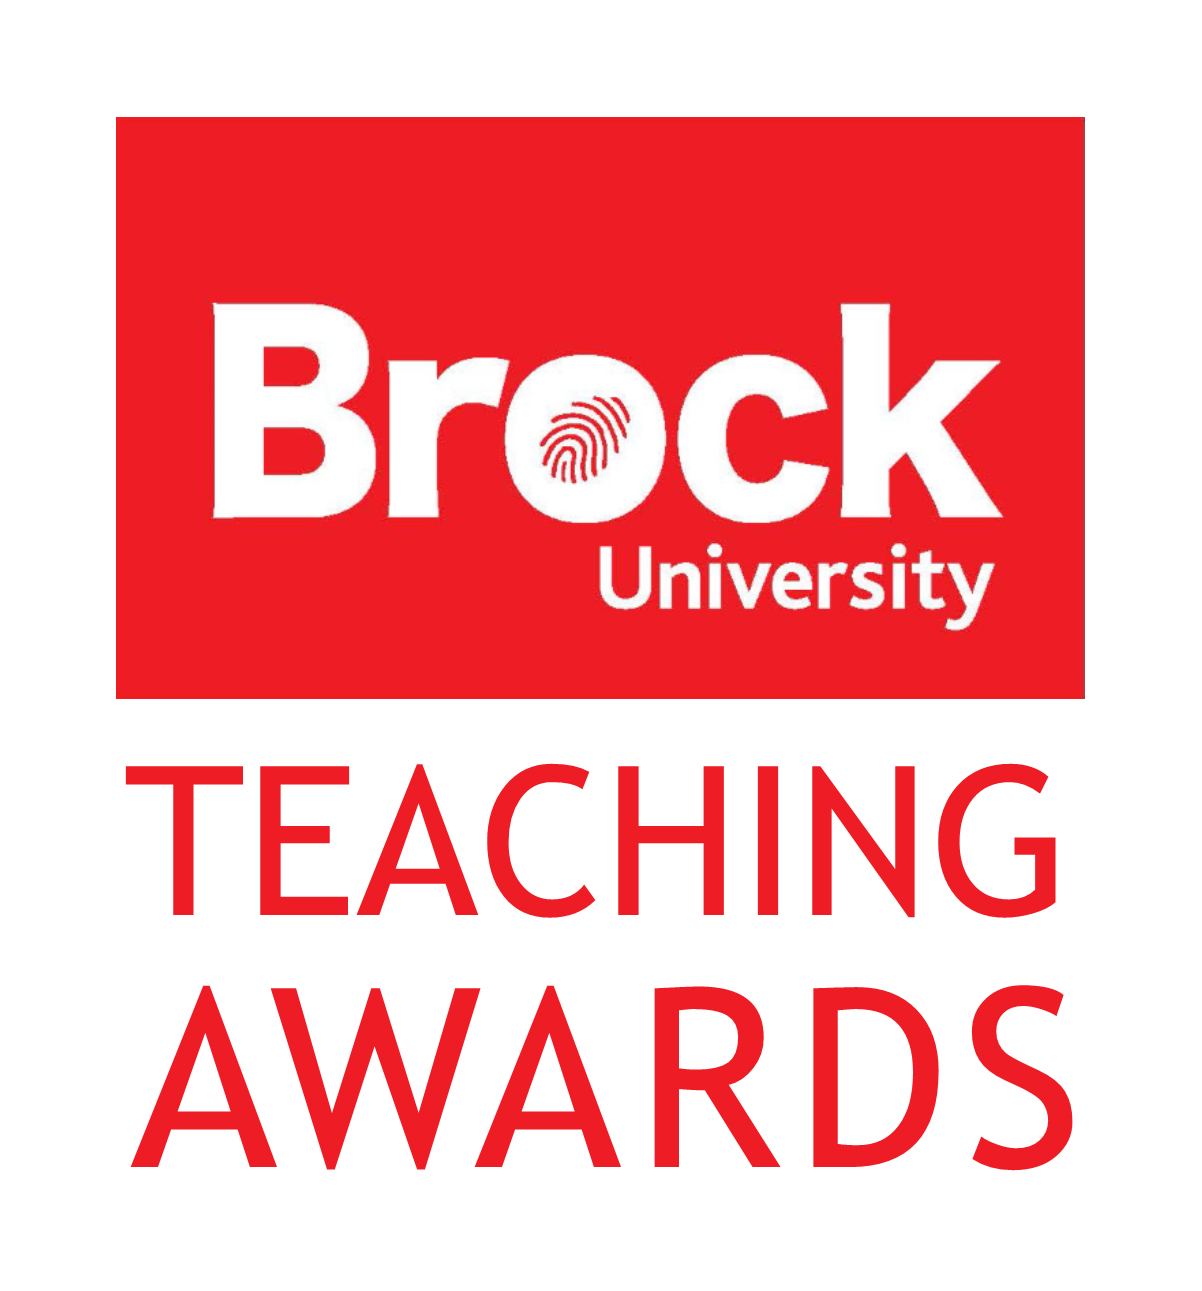 Brock teaching awards logo